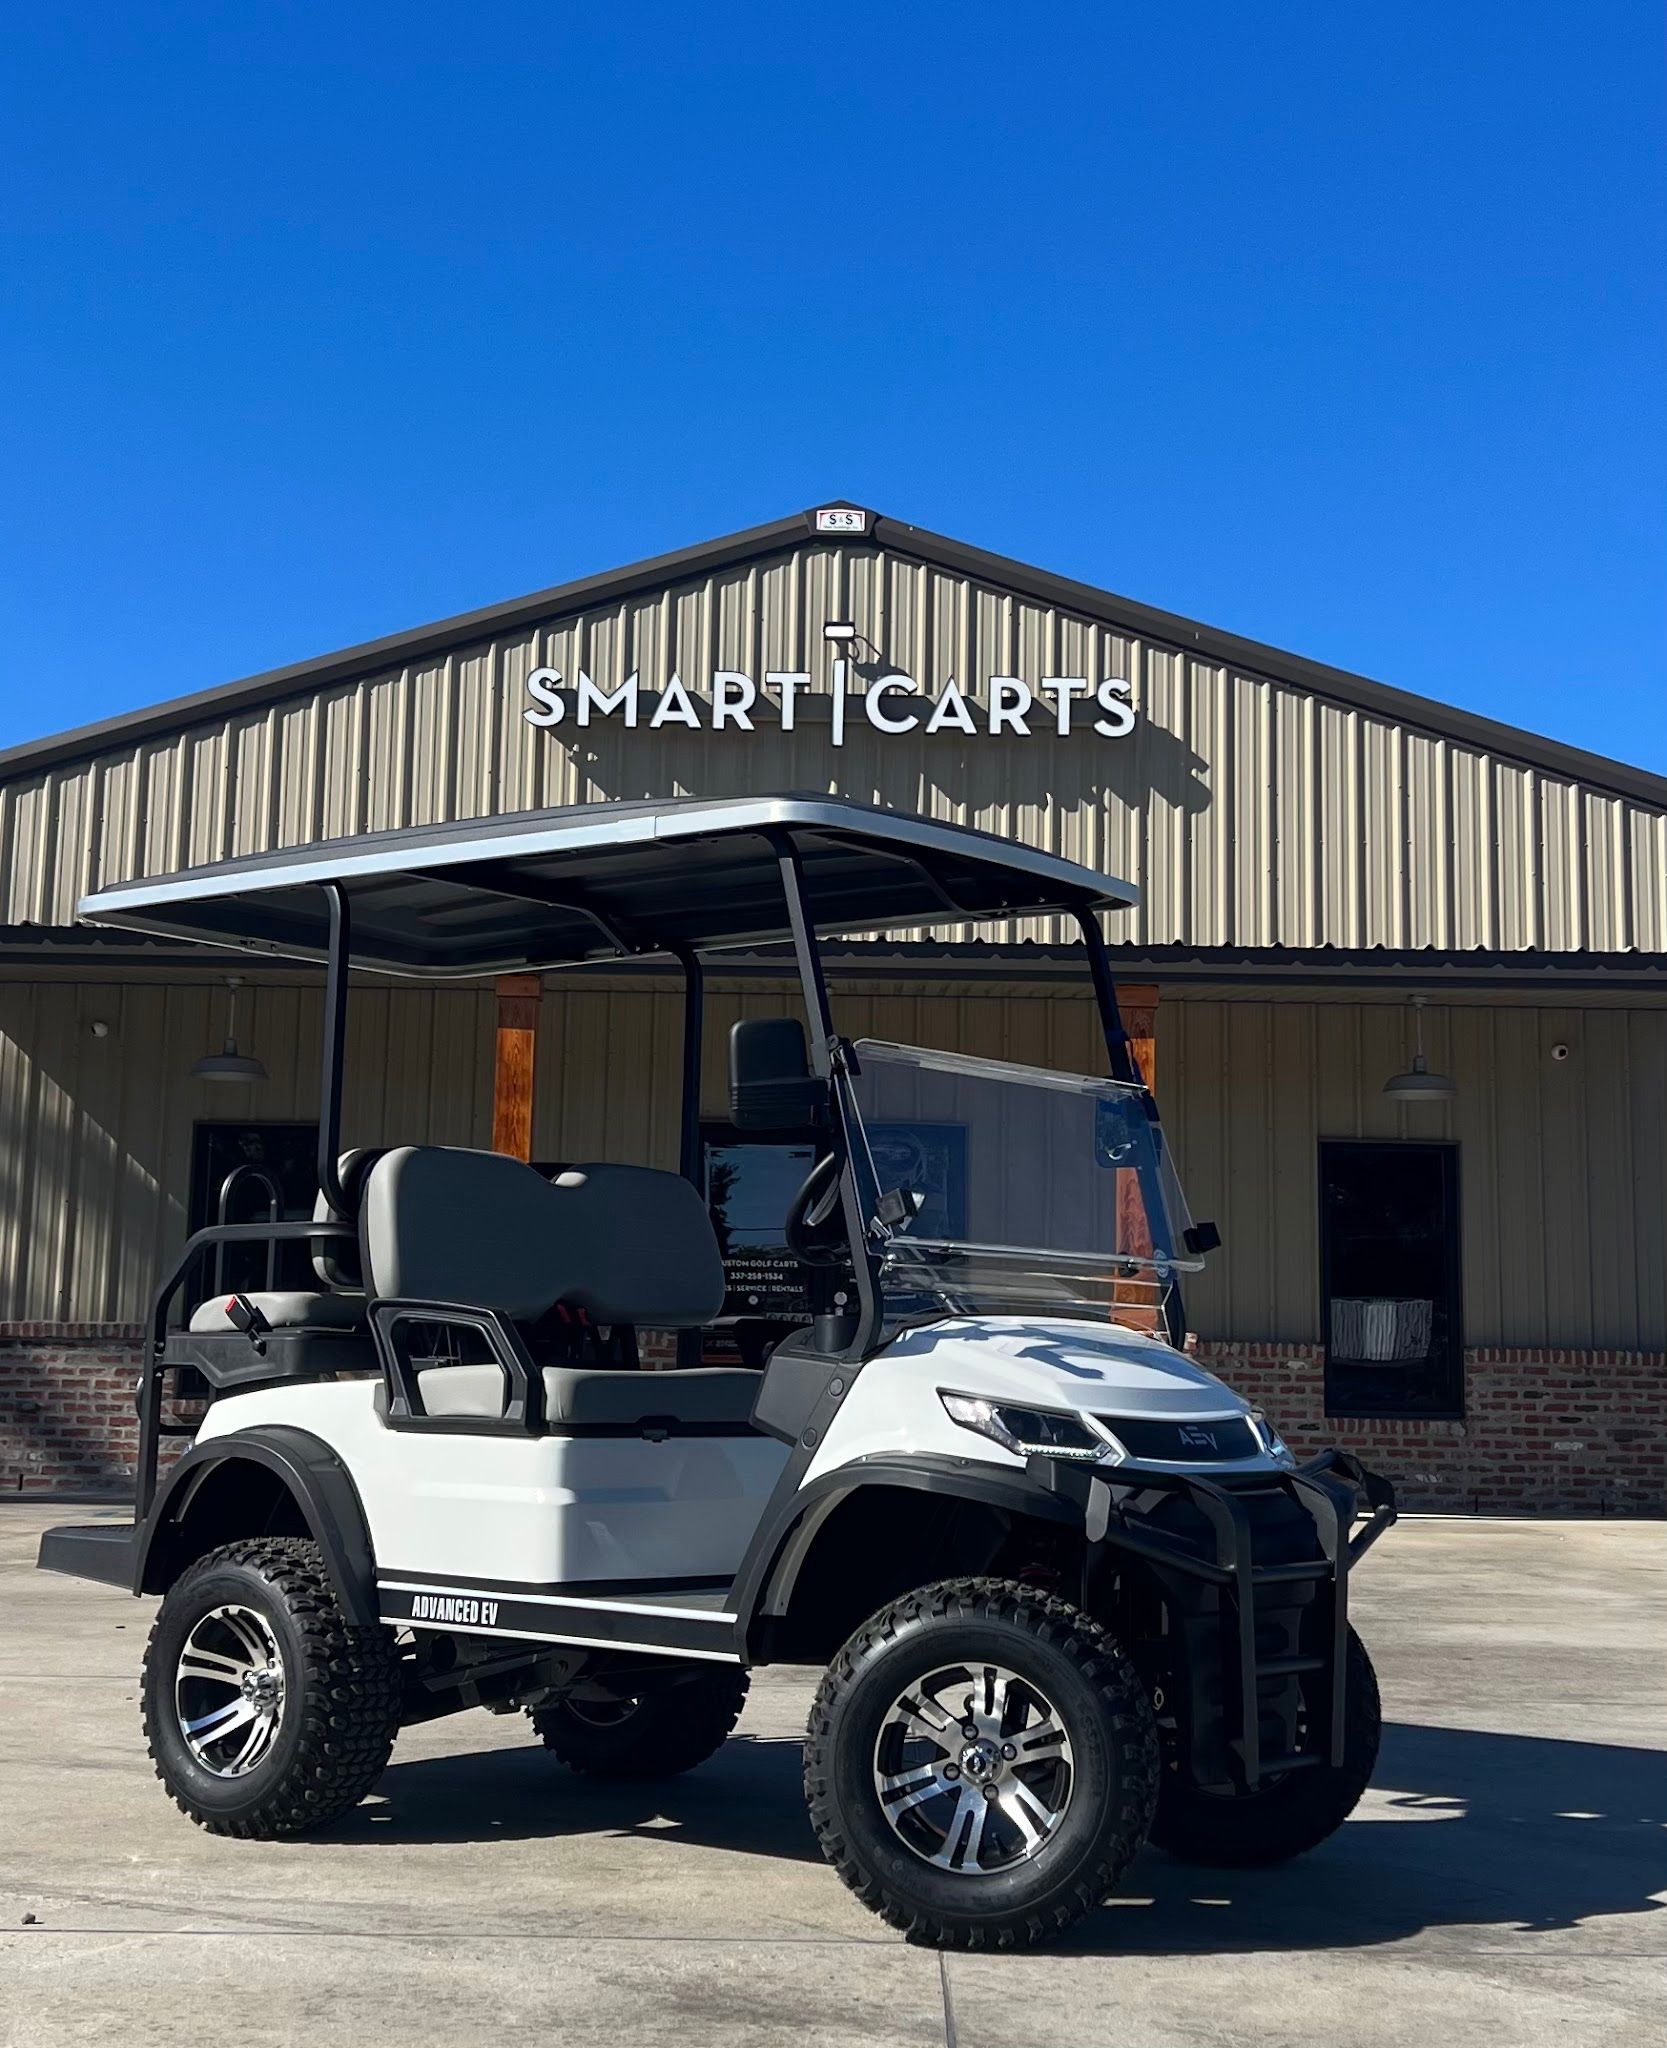 Smart Carts LLC